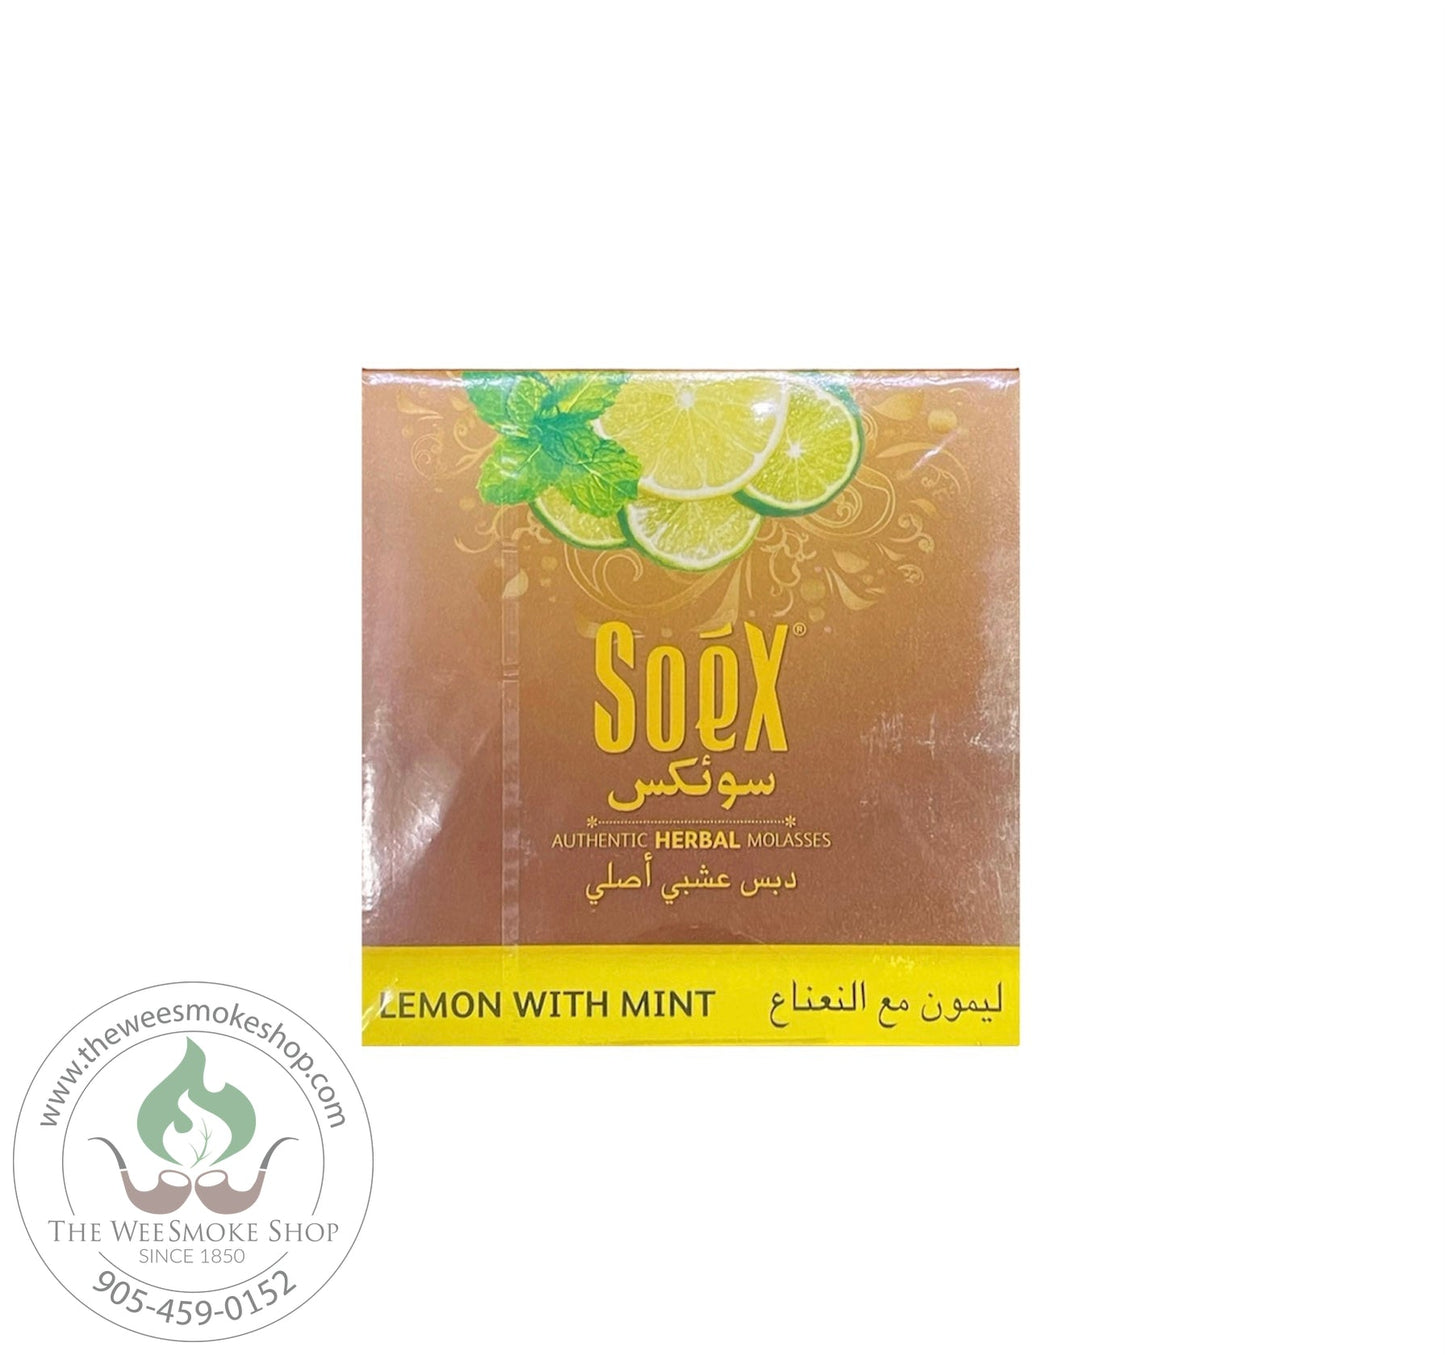 Soex Herbal Molasses (250g)